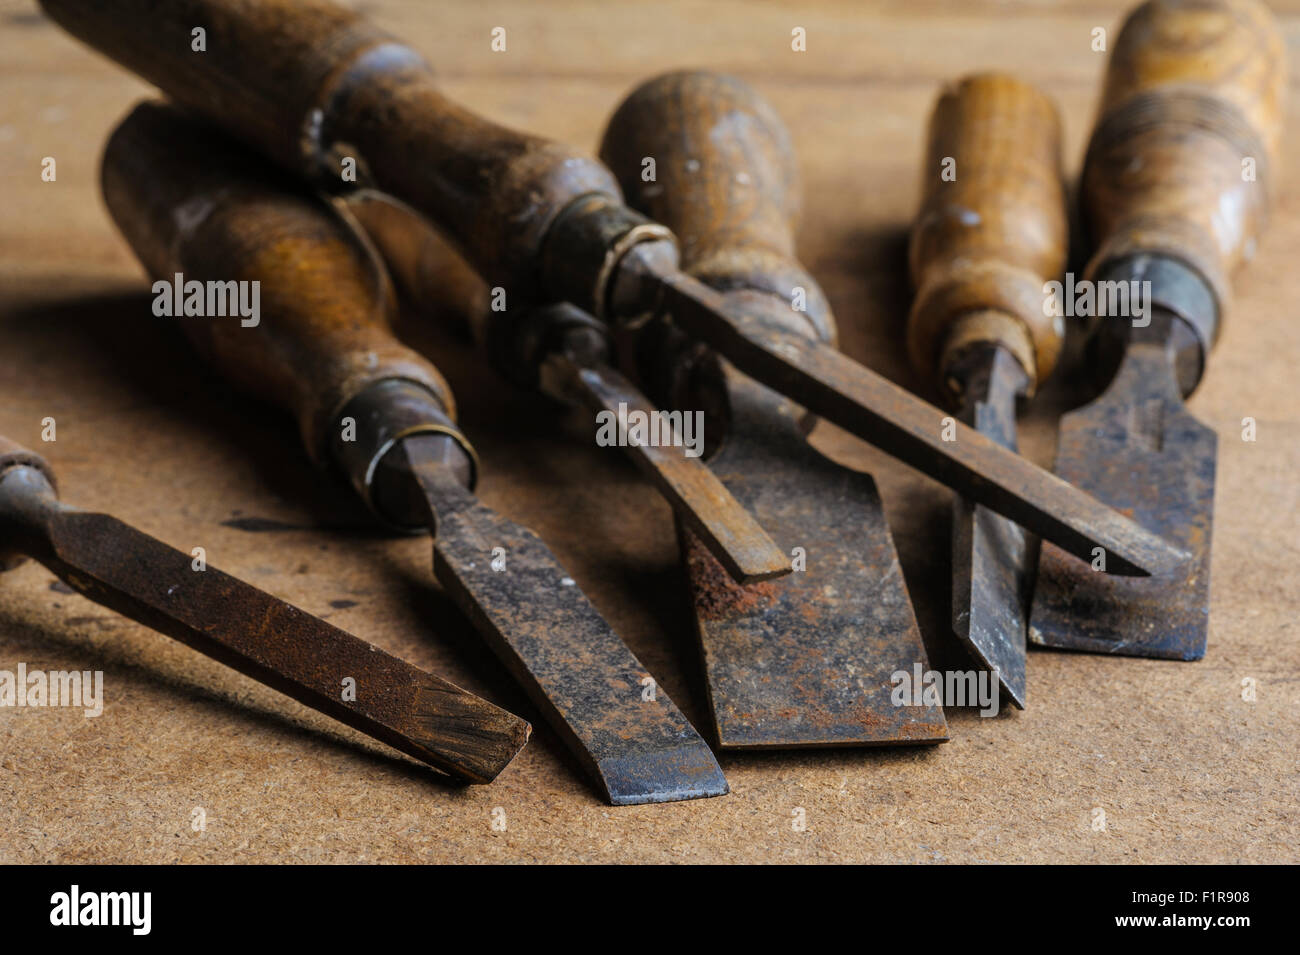 Algunos muy antiguos cinceles de carpintería Foto de stock